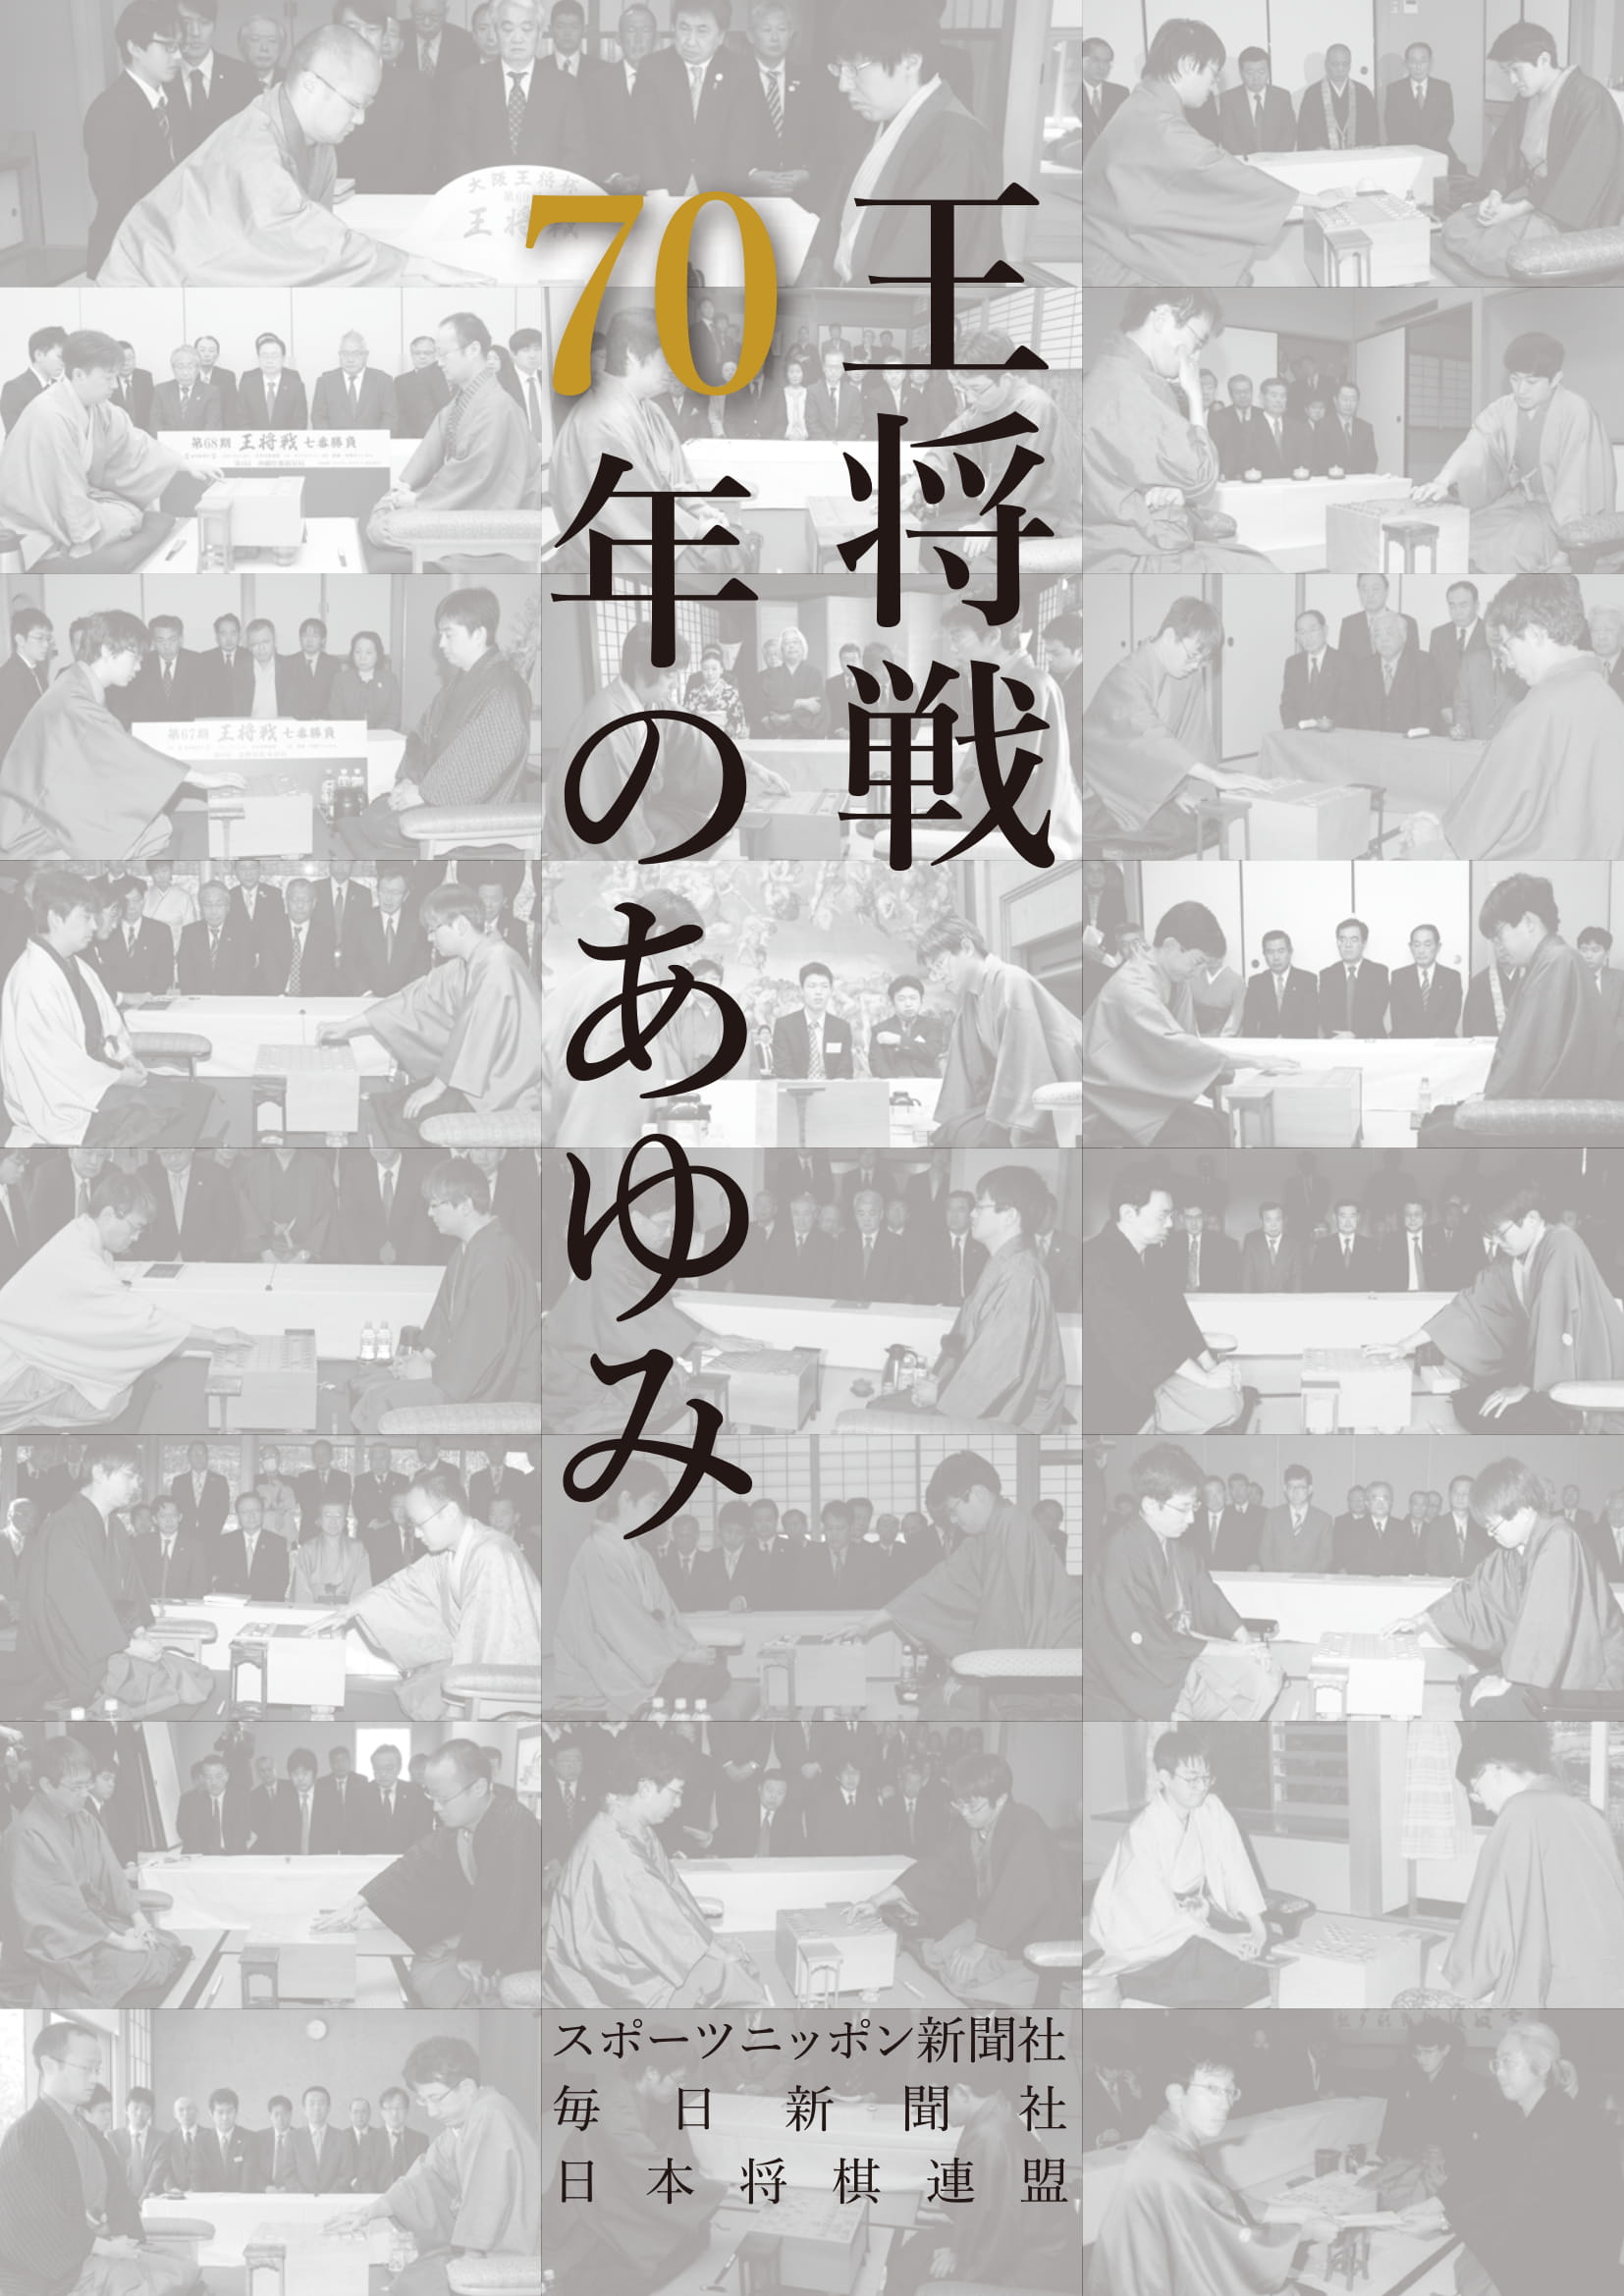 【将棋】王将戦・記念誌「70年のあゆみ」を出版するクラウドファンディングプロジェクト始動